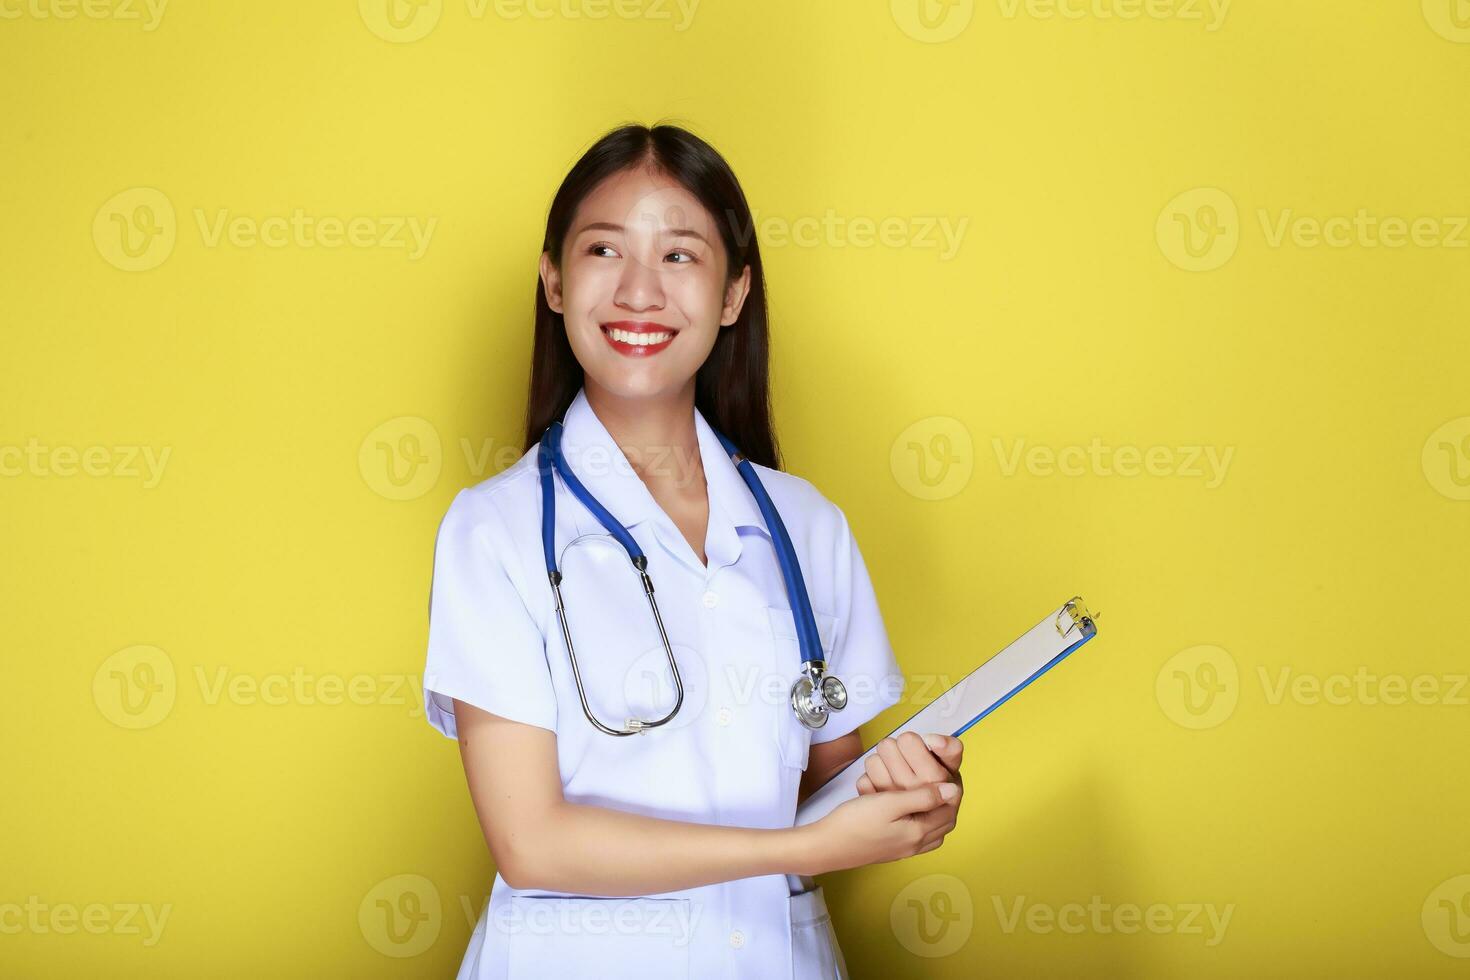 portret van een mooi jong vrouw in een geel achtergrond, Aziatisch vrouw vervelend een dokter uniform maakt een glimlachen uitdrukking, een jong vrouw vervelend een medisch stethoscoop heeft een vriendelijk uitdrukking. foto